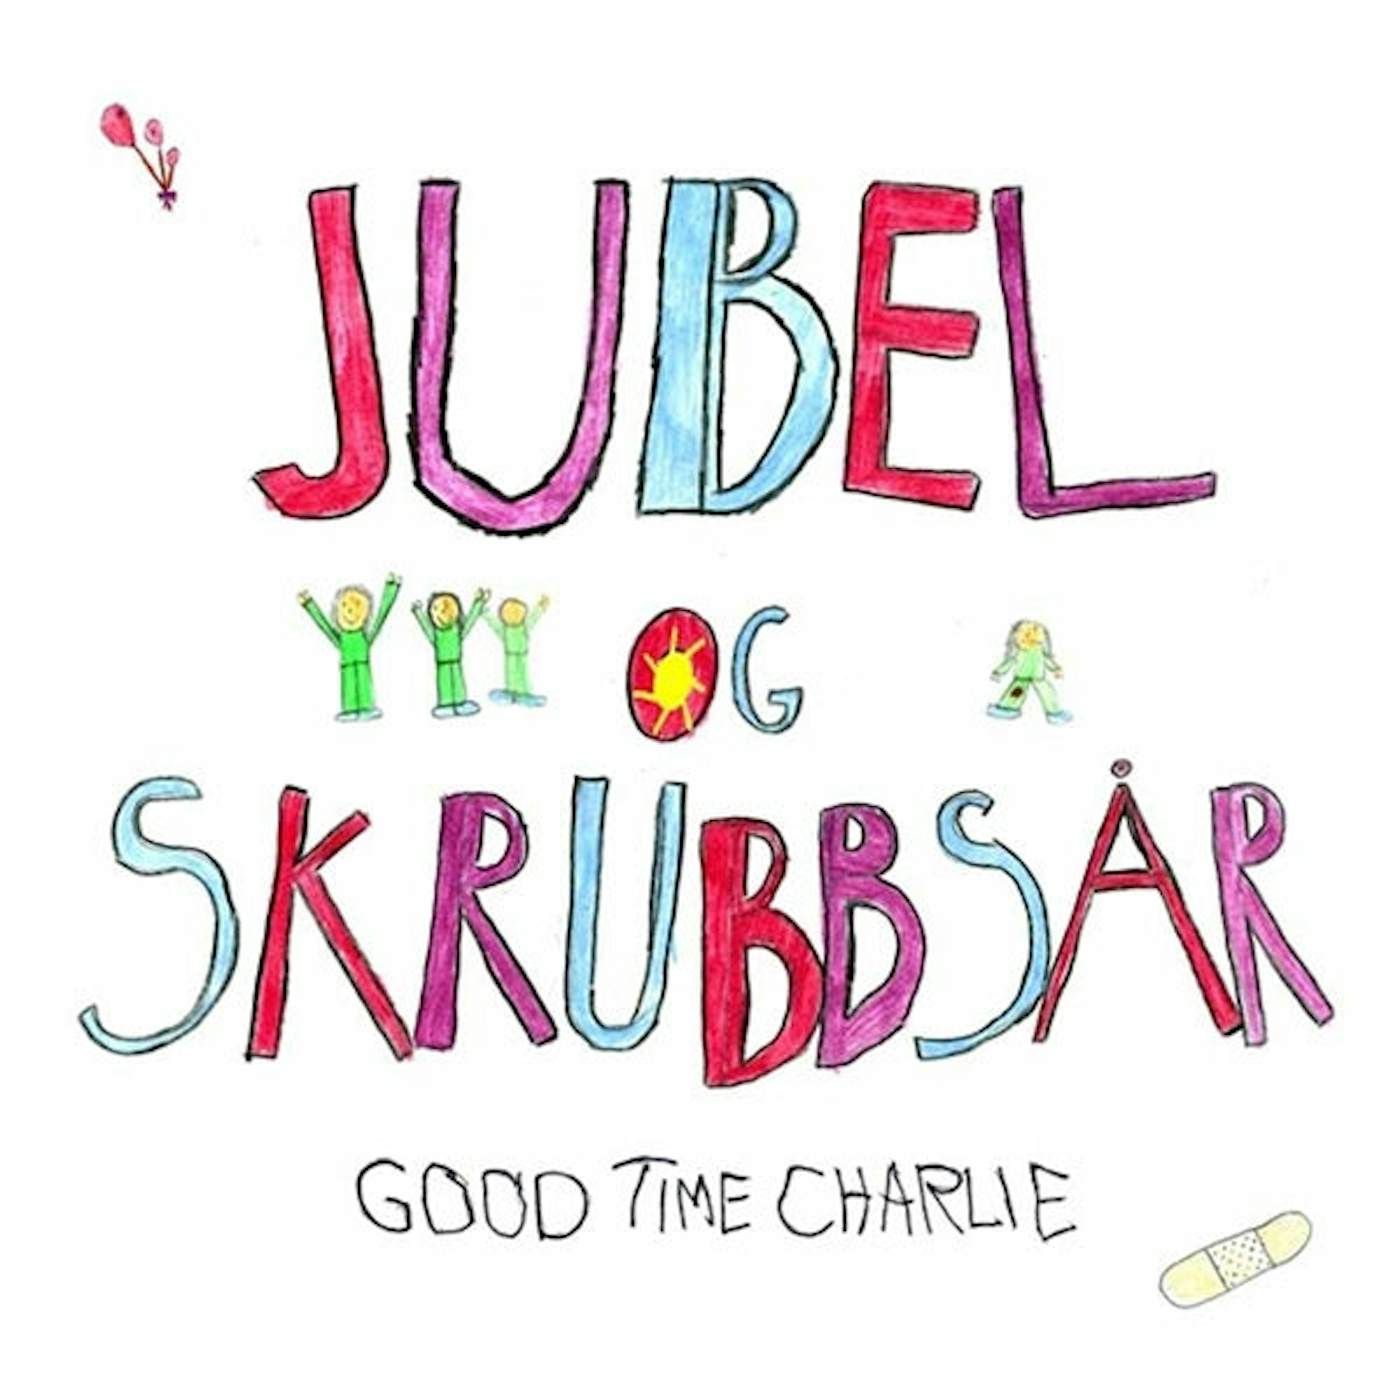 Good Time Charlie LP - Jubel Og Skrubbsar (+Cd)